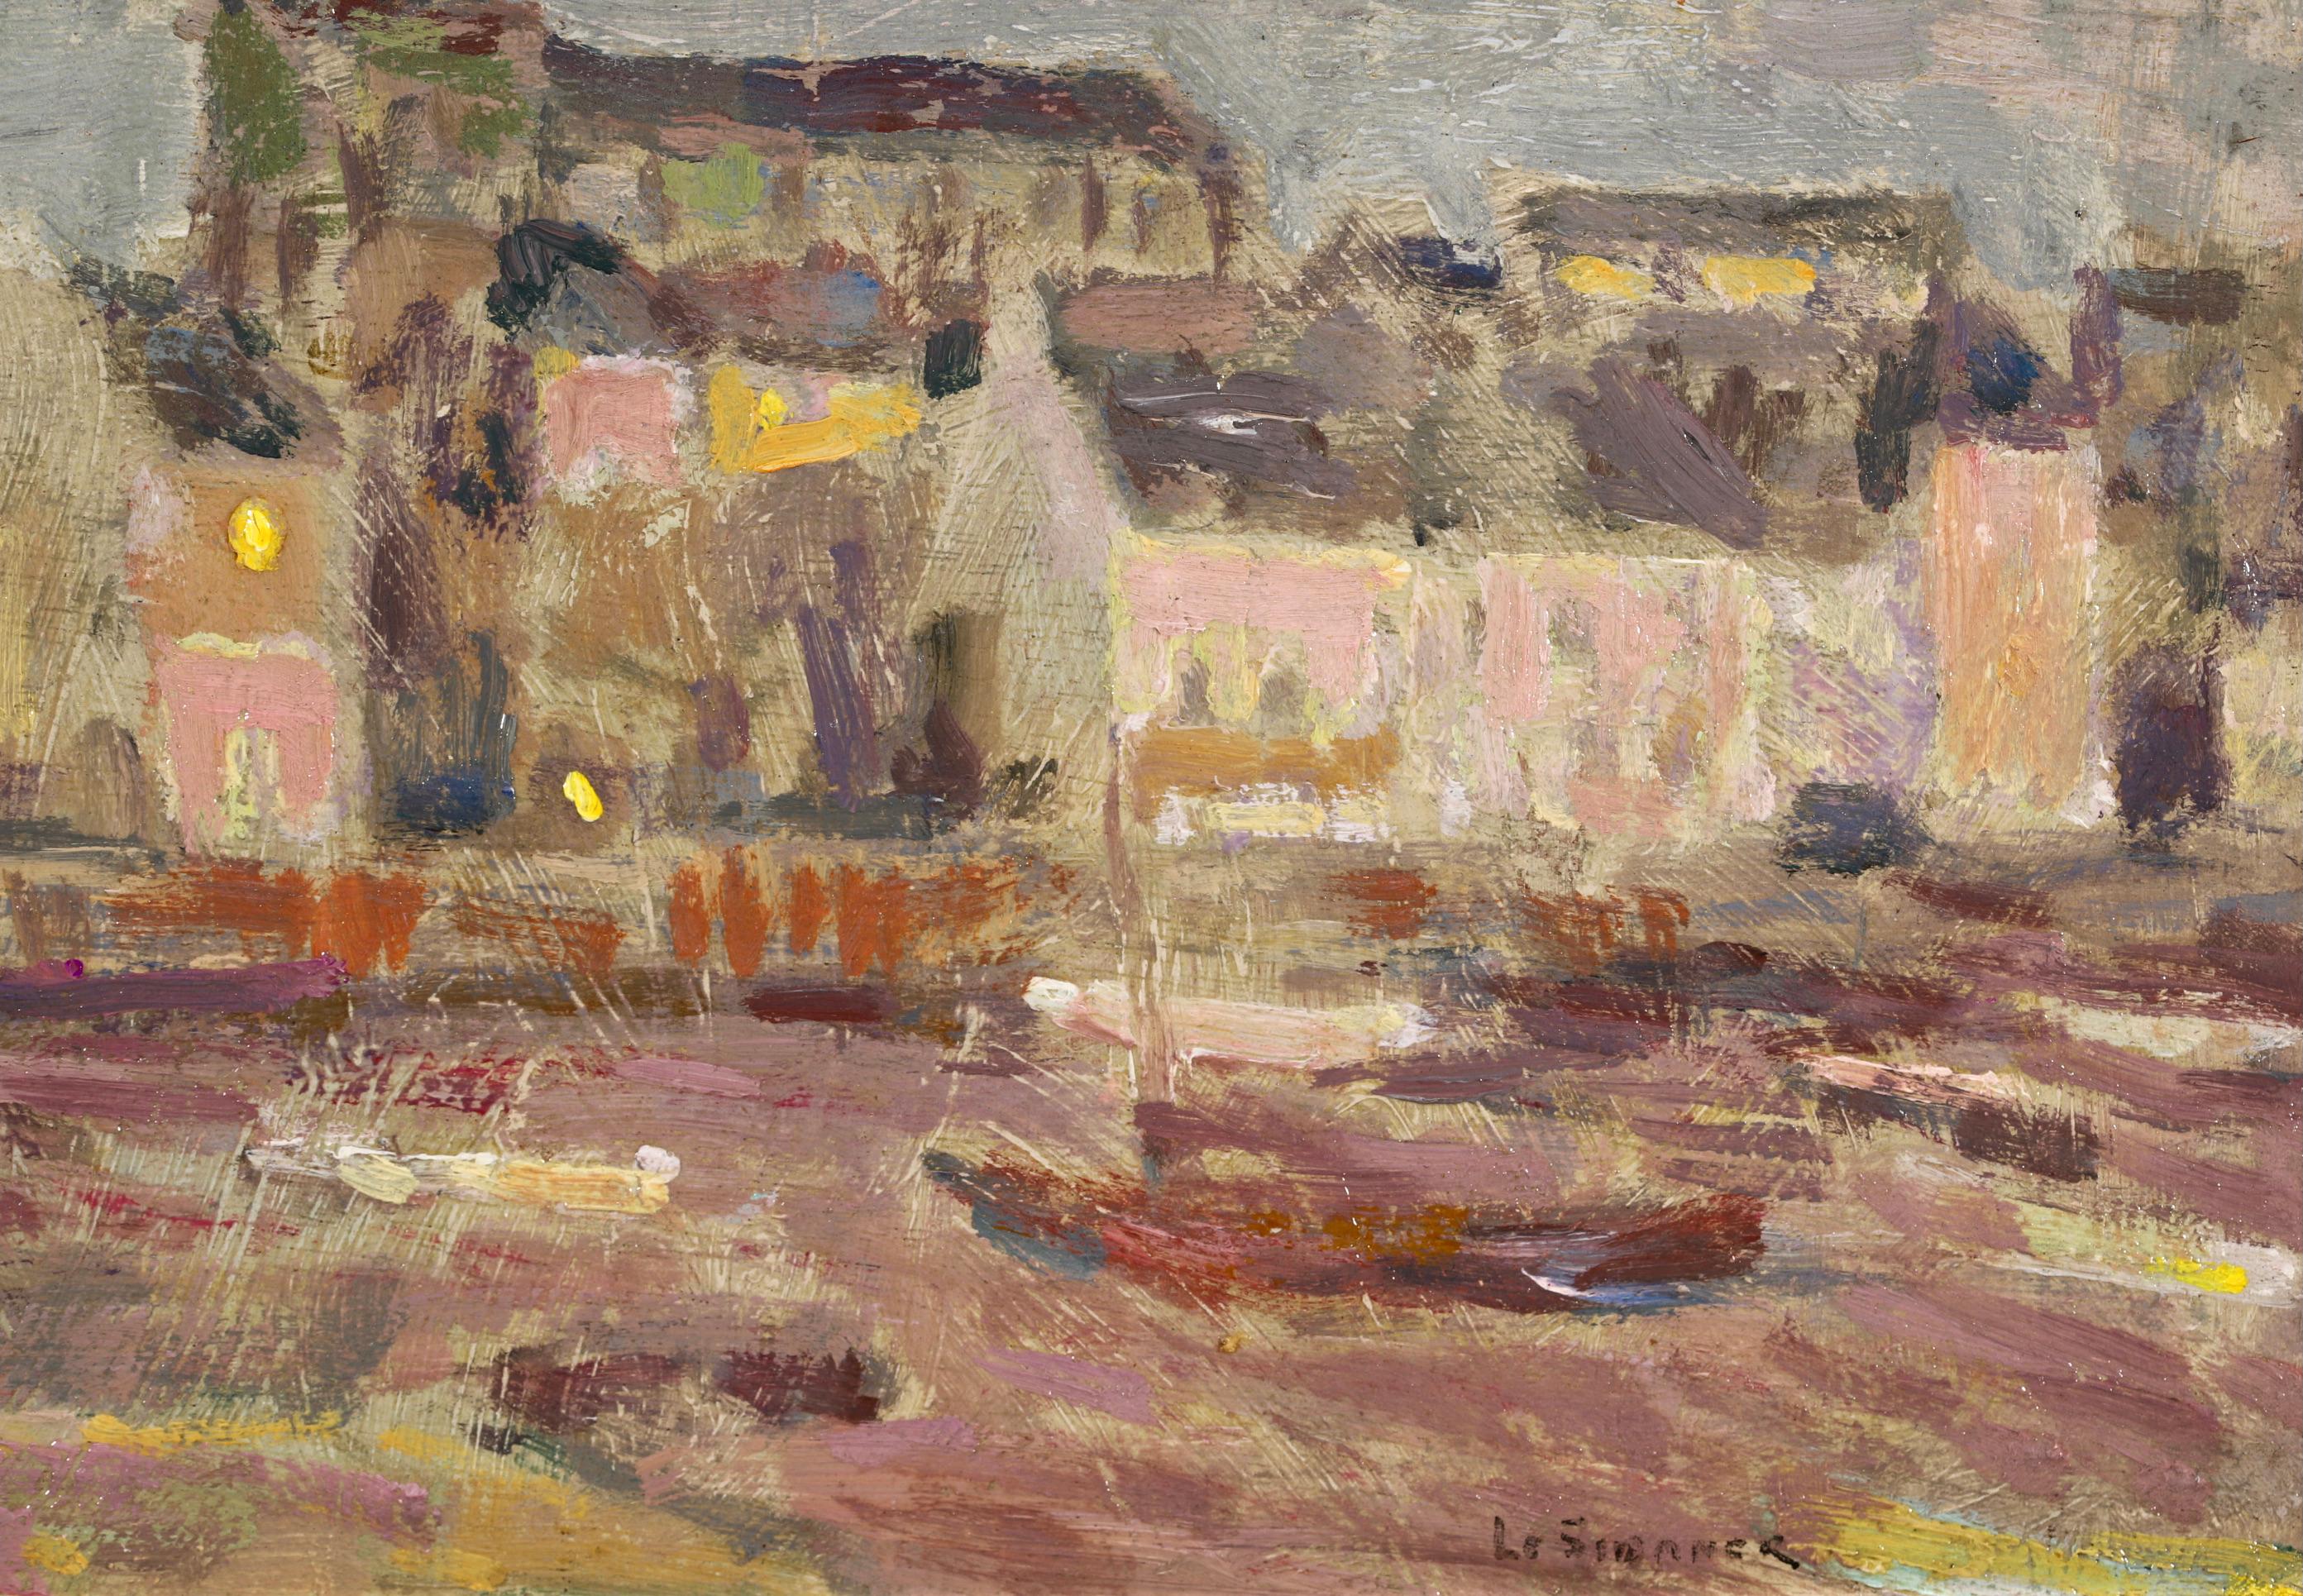 Saint Servan - Brittany - Post Impressionist Landscape by Henri Le Sidaner 4